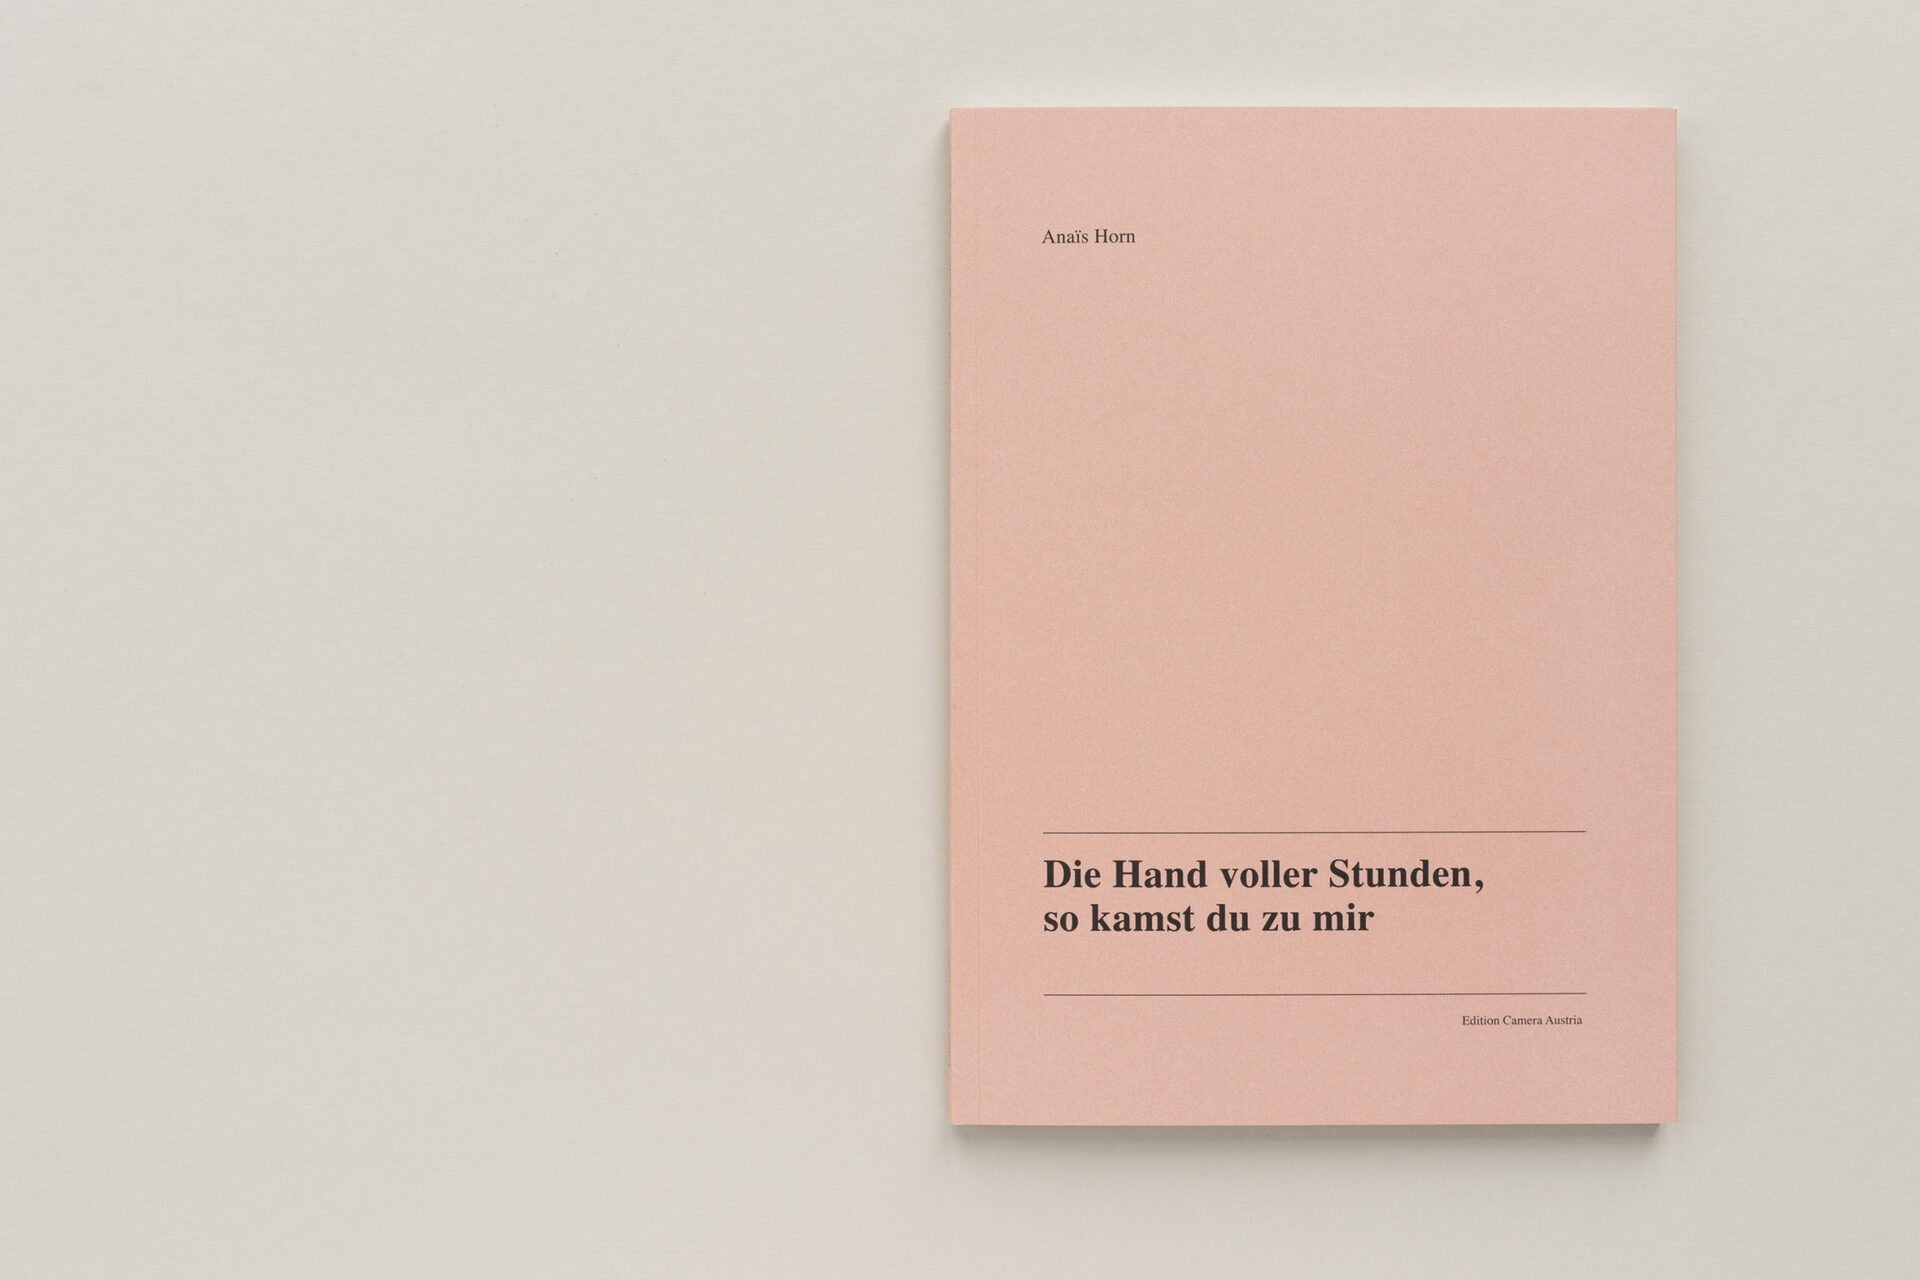 Anaïs Horn “Die Hand voller Stunden, so kamst du zu mir”, Edition Camera Austria, 2021. Texts by Attilia Fattori Franchini and Wendy Vogel.